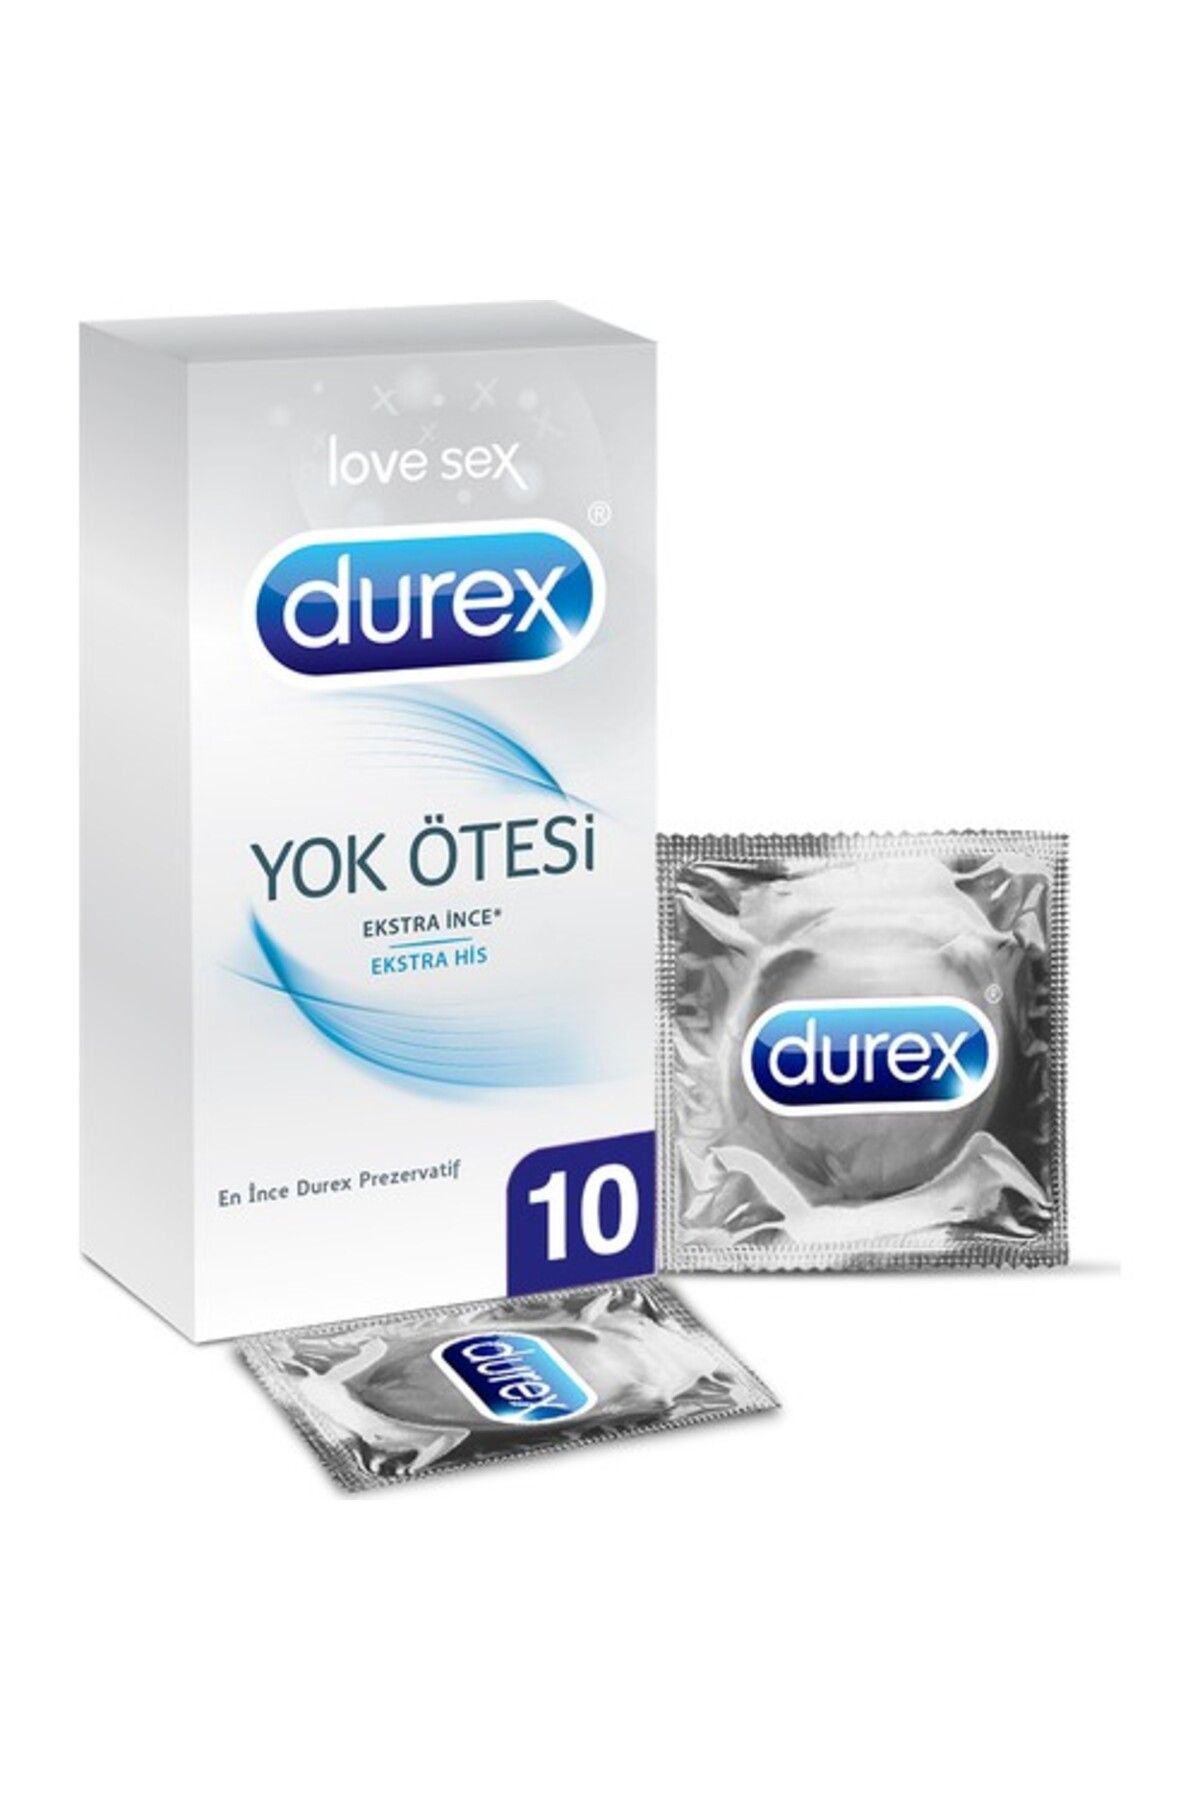 Durex Yok Ötesi Ekstra Ince Ekstra His Prezervatif 10'lu